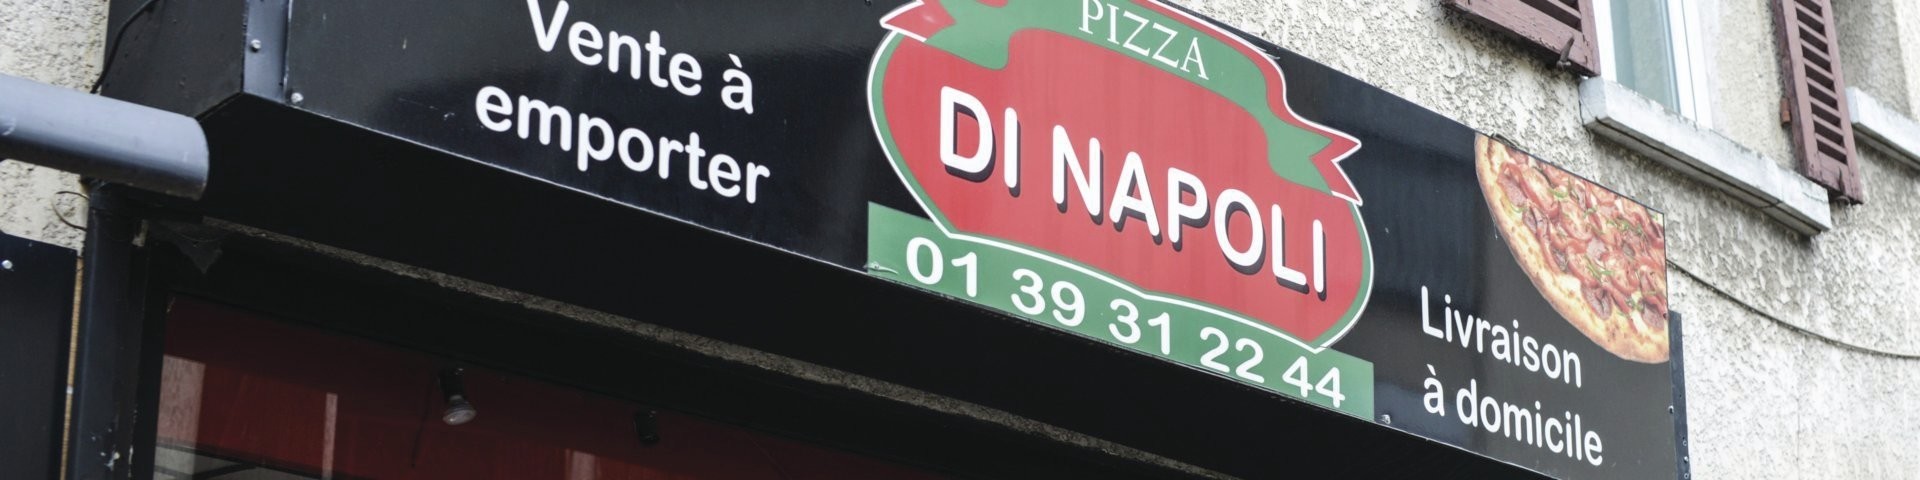 Boutique PIZZA DI NAPOLI - Mon commerce à Herblay